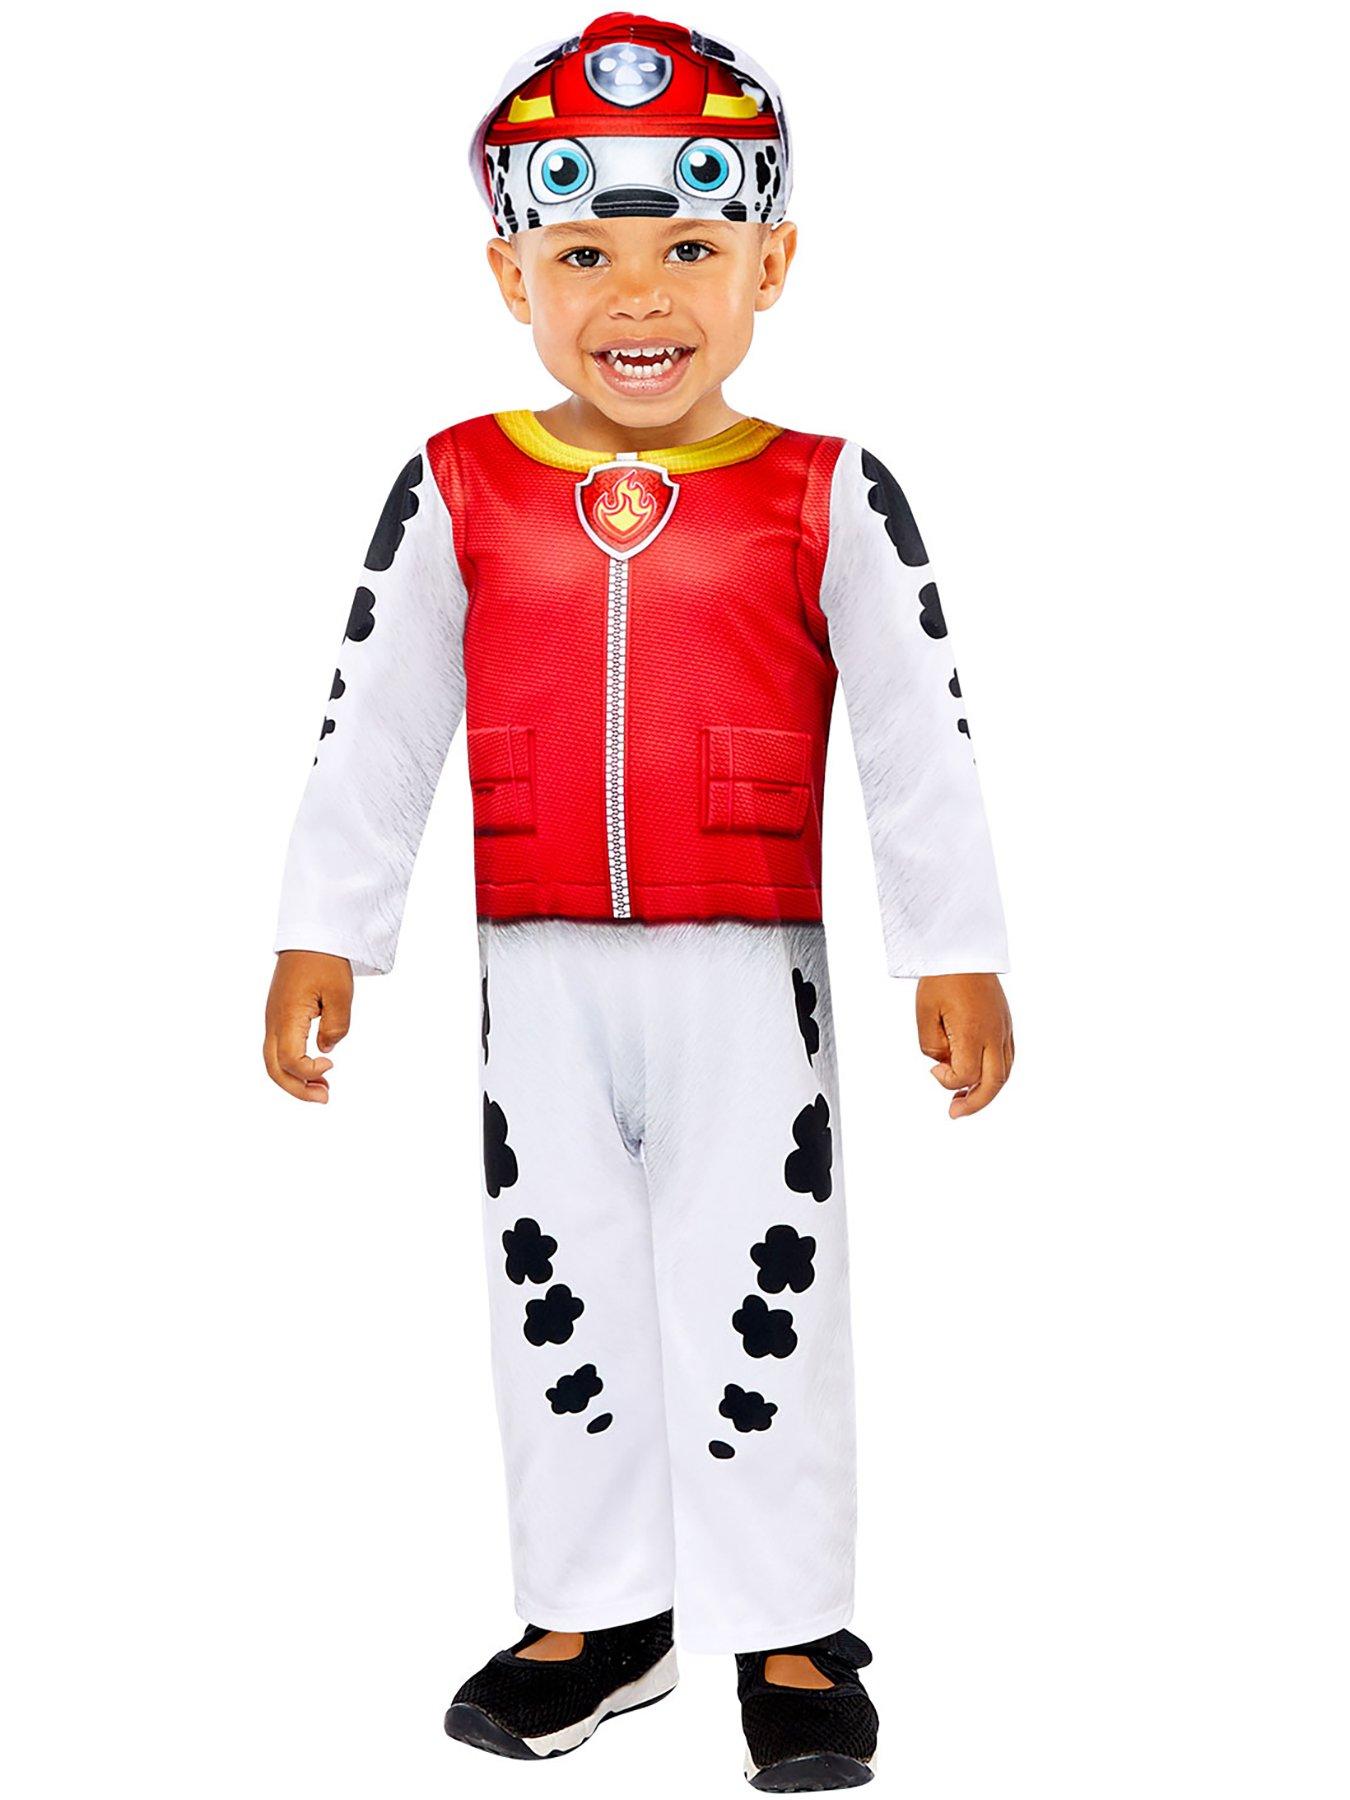 Paw Patrol Zuma Costume Dress Set Kids Fancy Dress 3-6 Party Halloween